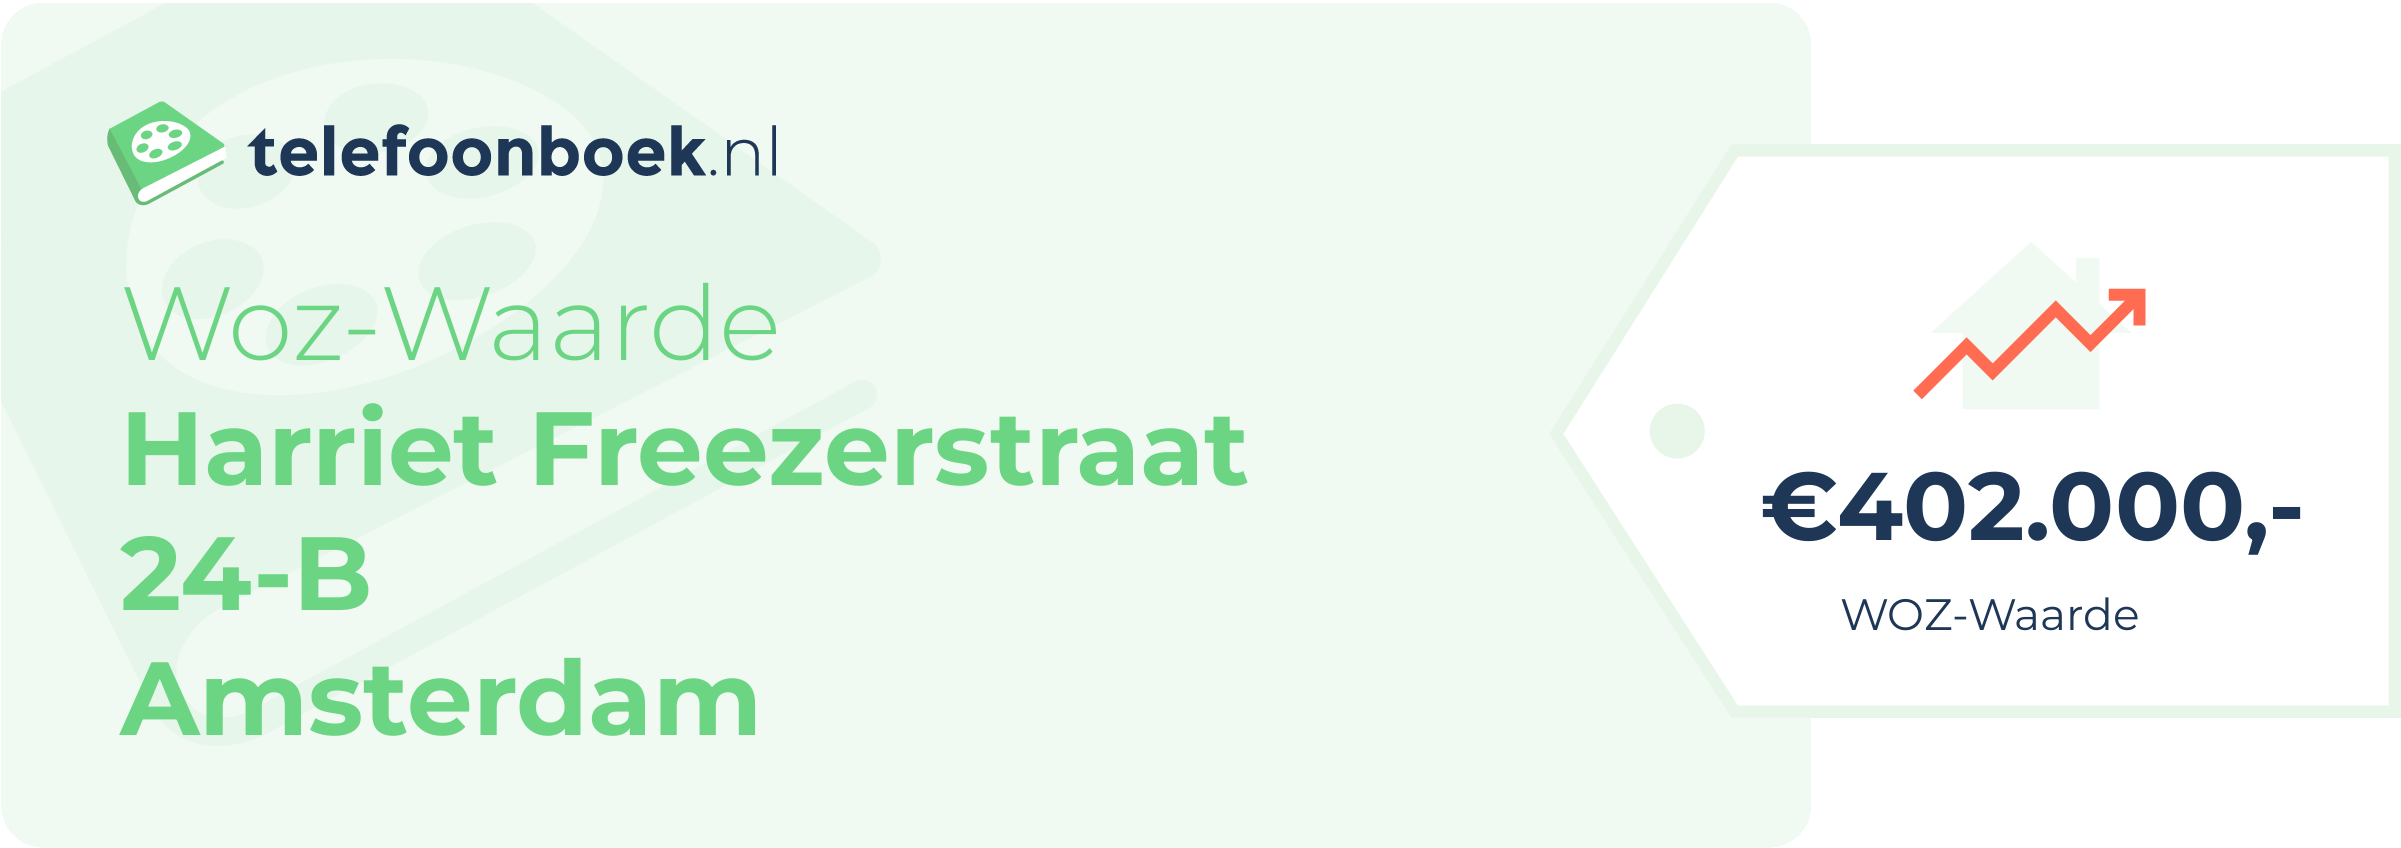 WOZ-waarde Harriet Freezerstraat 24-B Amsterdam